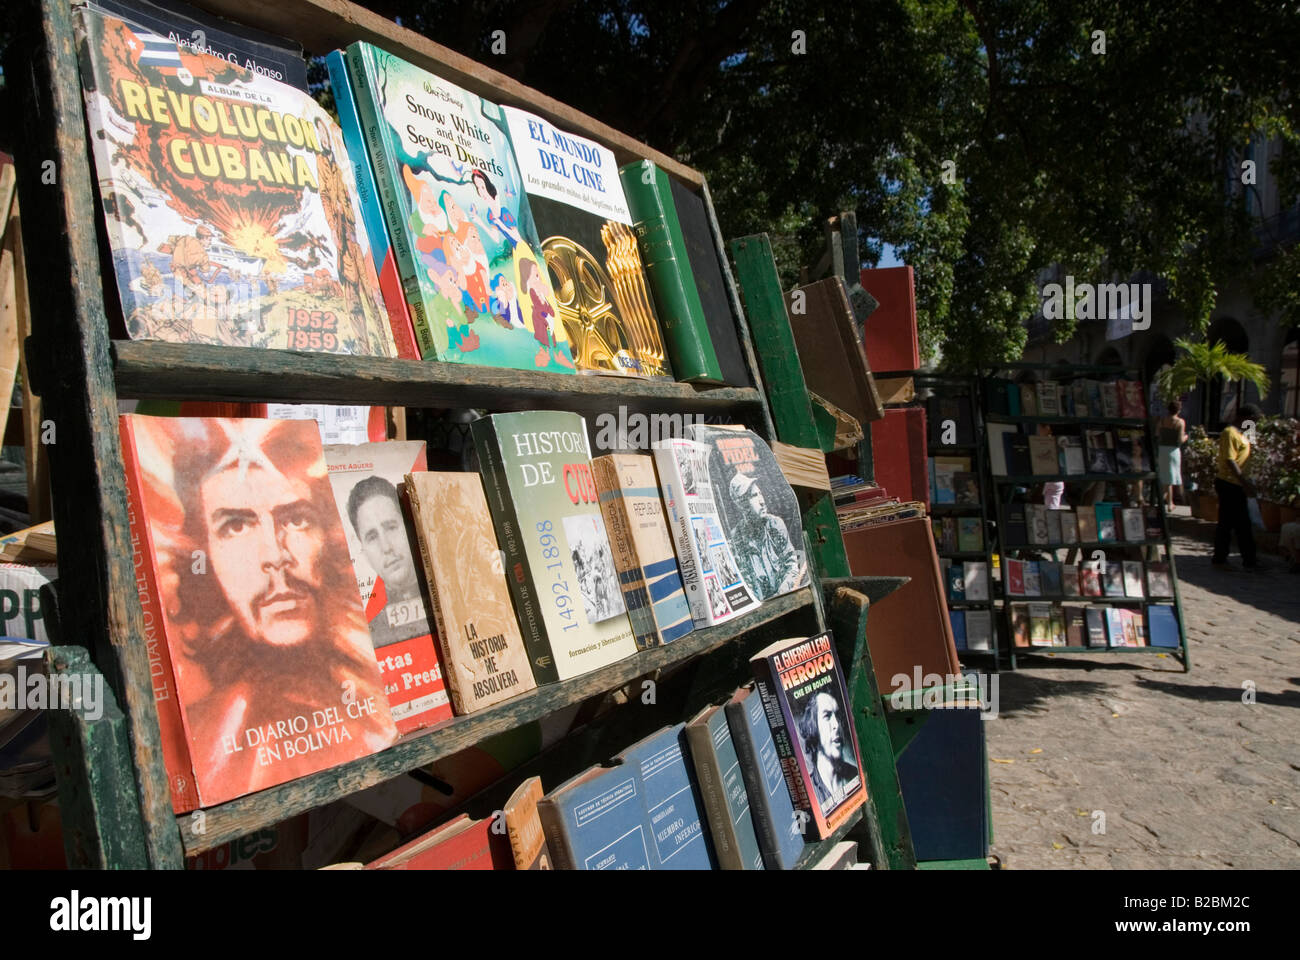 Second hand books sur la révolution socialiste cubaine à la vente sur un marché du livre sur la Plaza de Armas à La Habana Vieja Cuba La Havane Banque D'Images